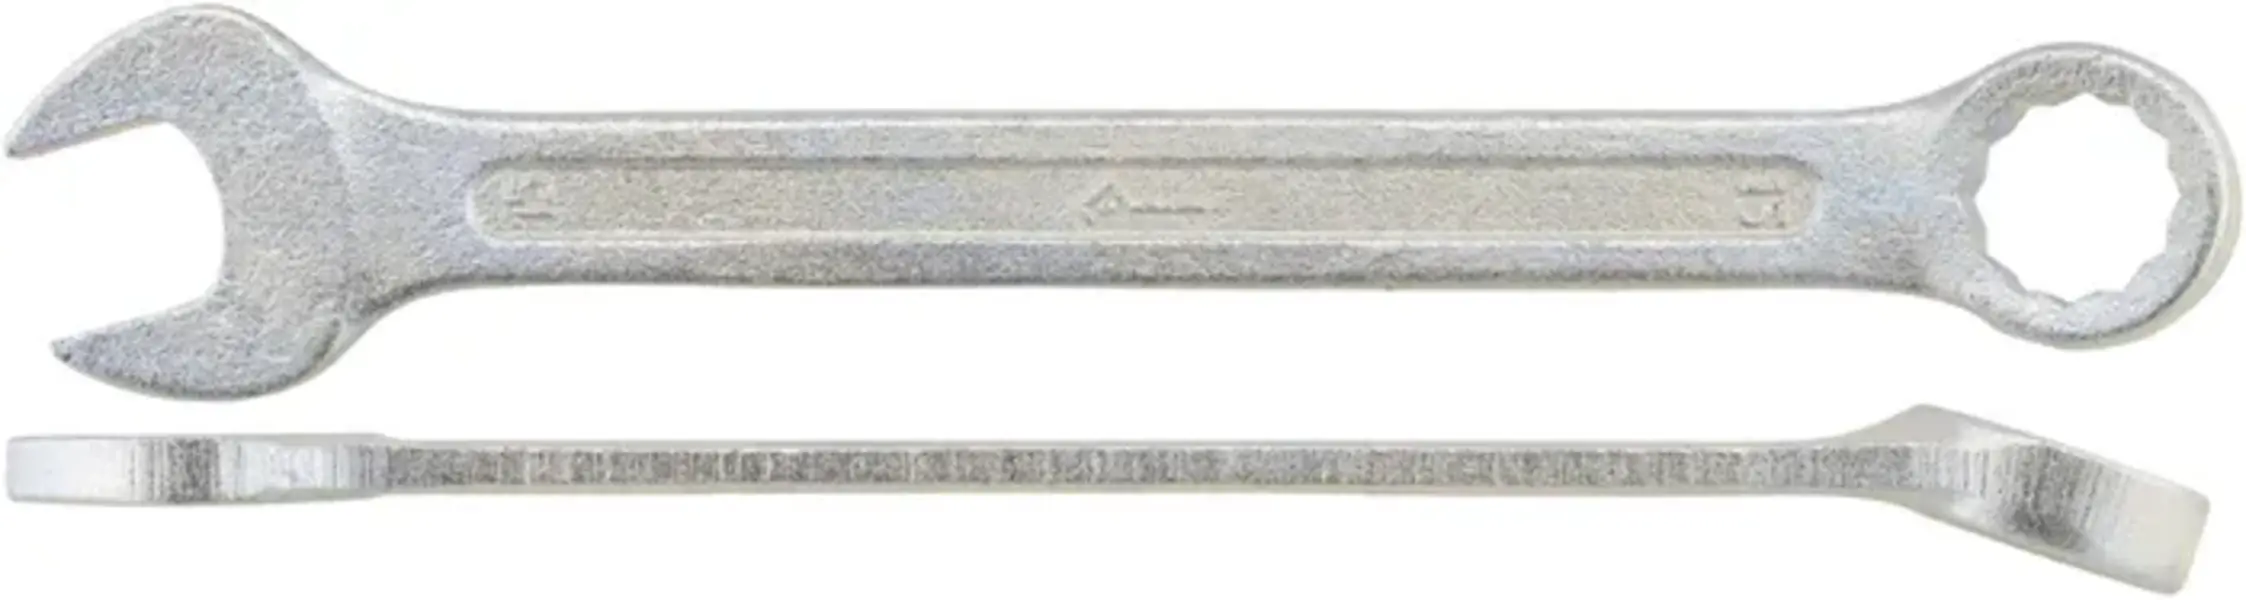 Ключ Комбинированный 15 Кзсми КЗСМИ арт. 51544210